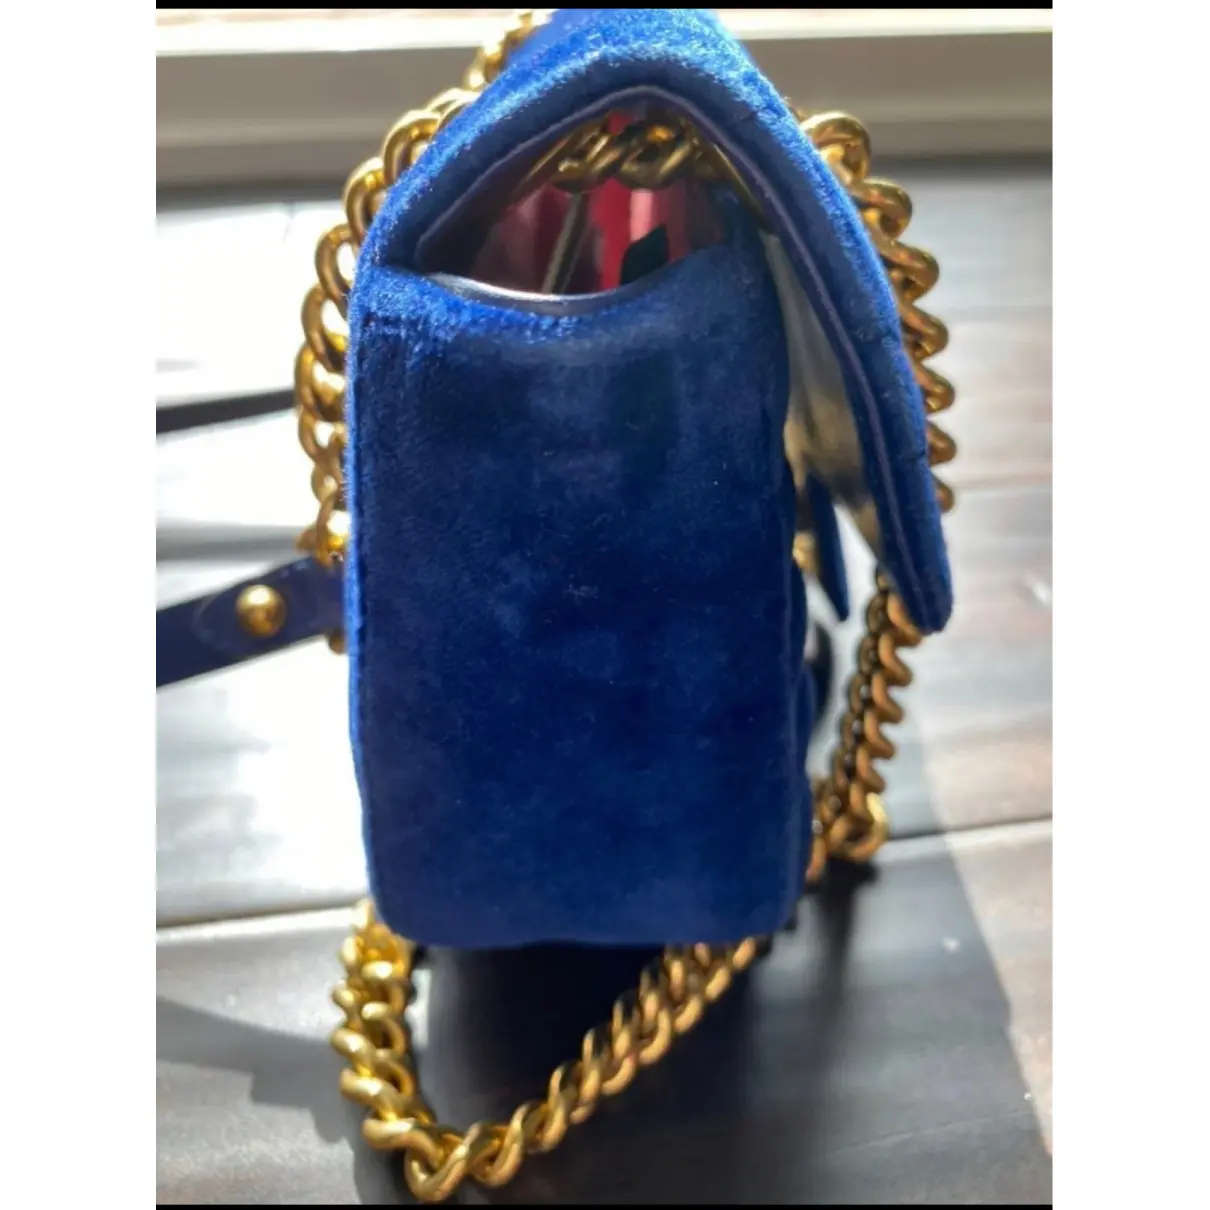 Buy Gucci GG Marmont Flap velvet crossbody bag online